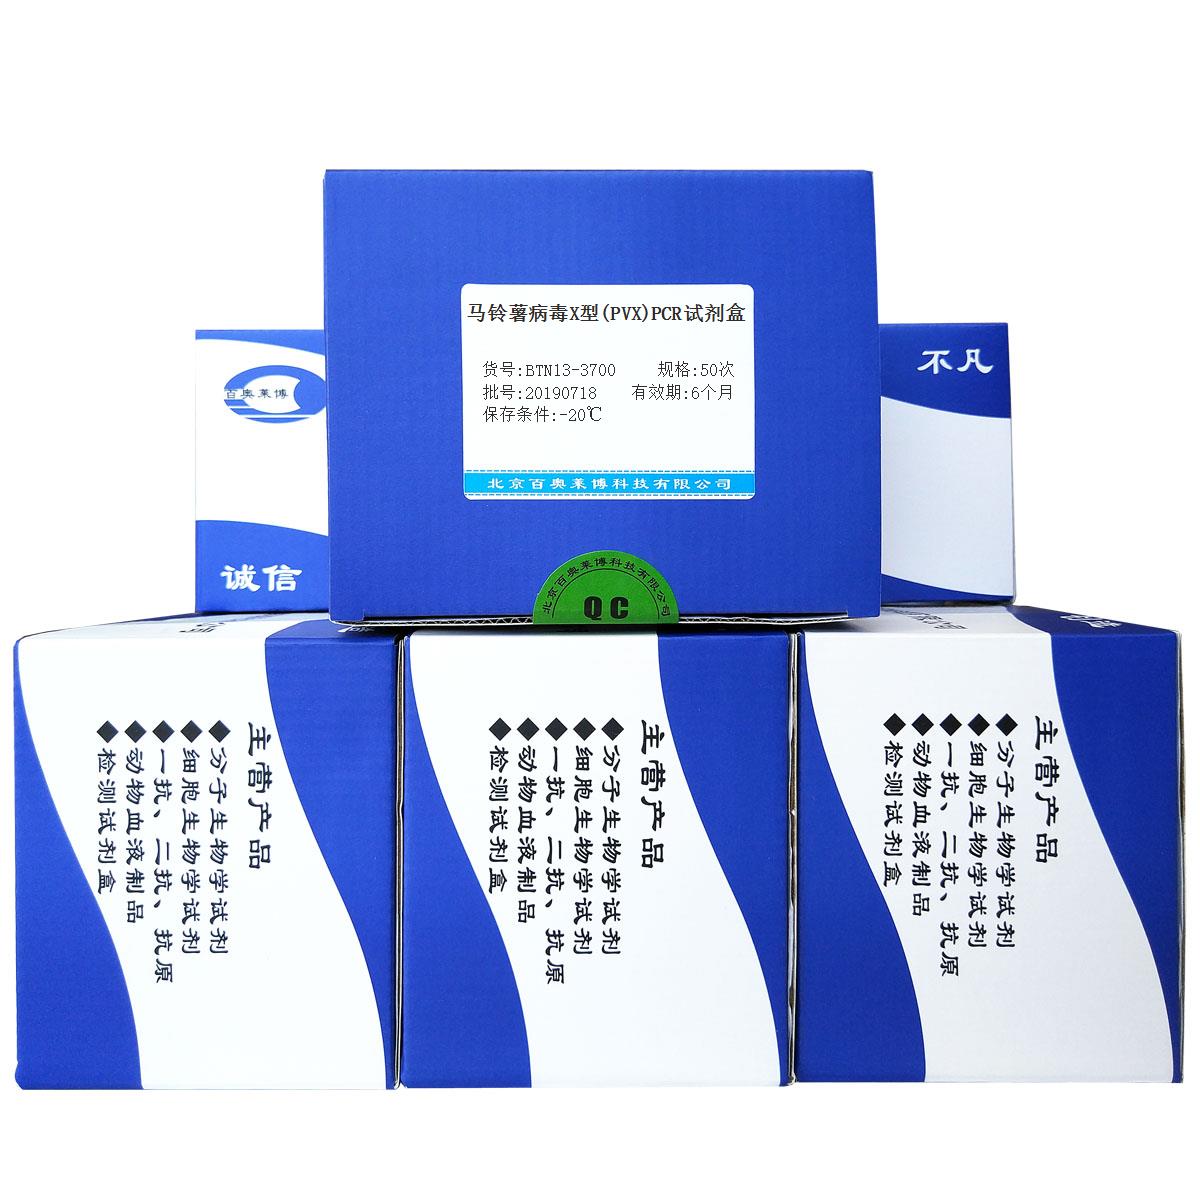 马铃薯病毒X型(PVX)PCR试剂盒北京供应商